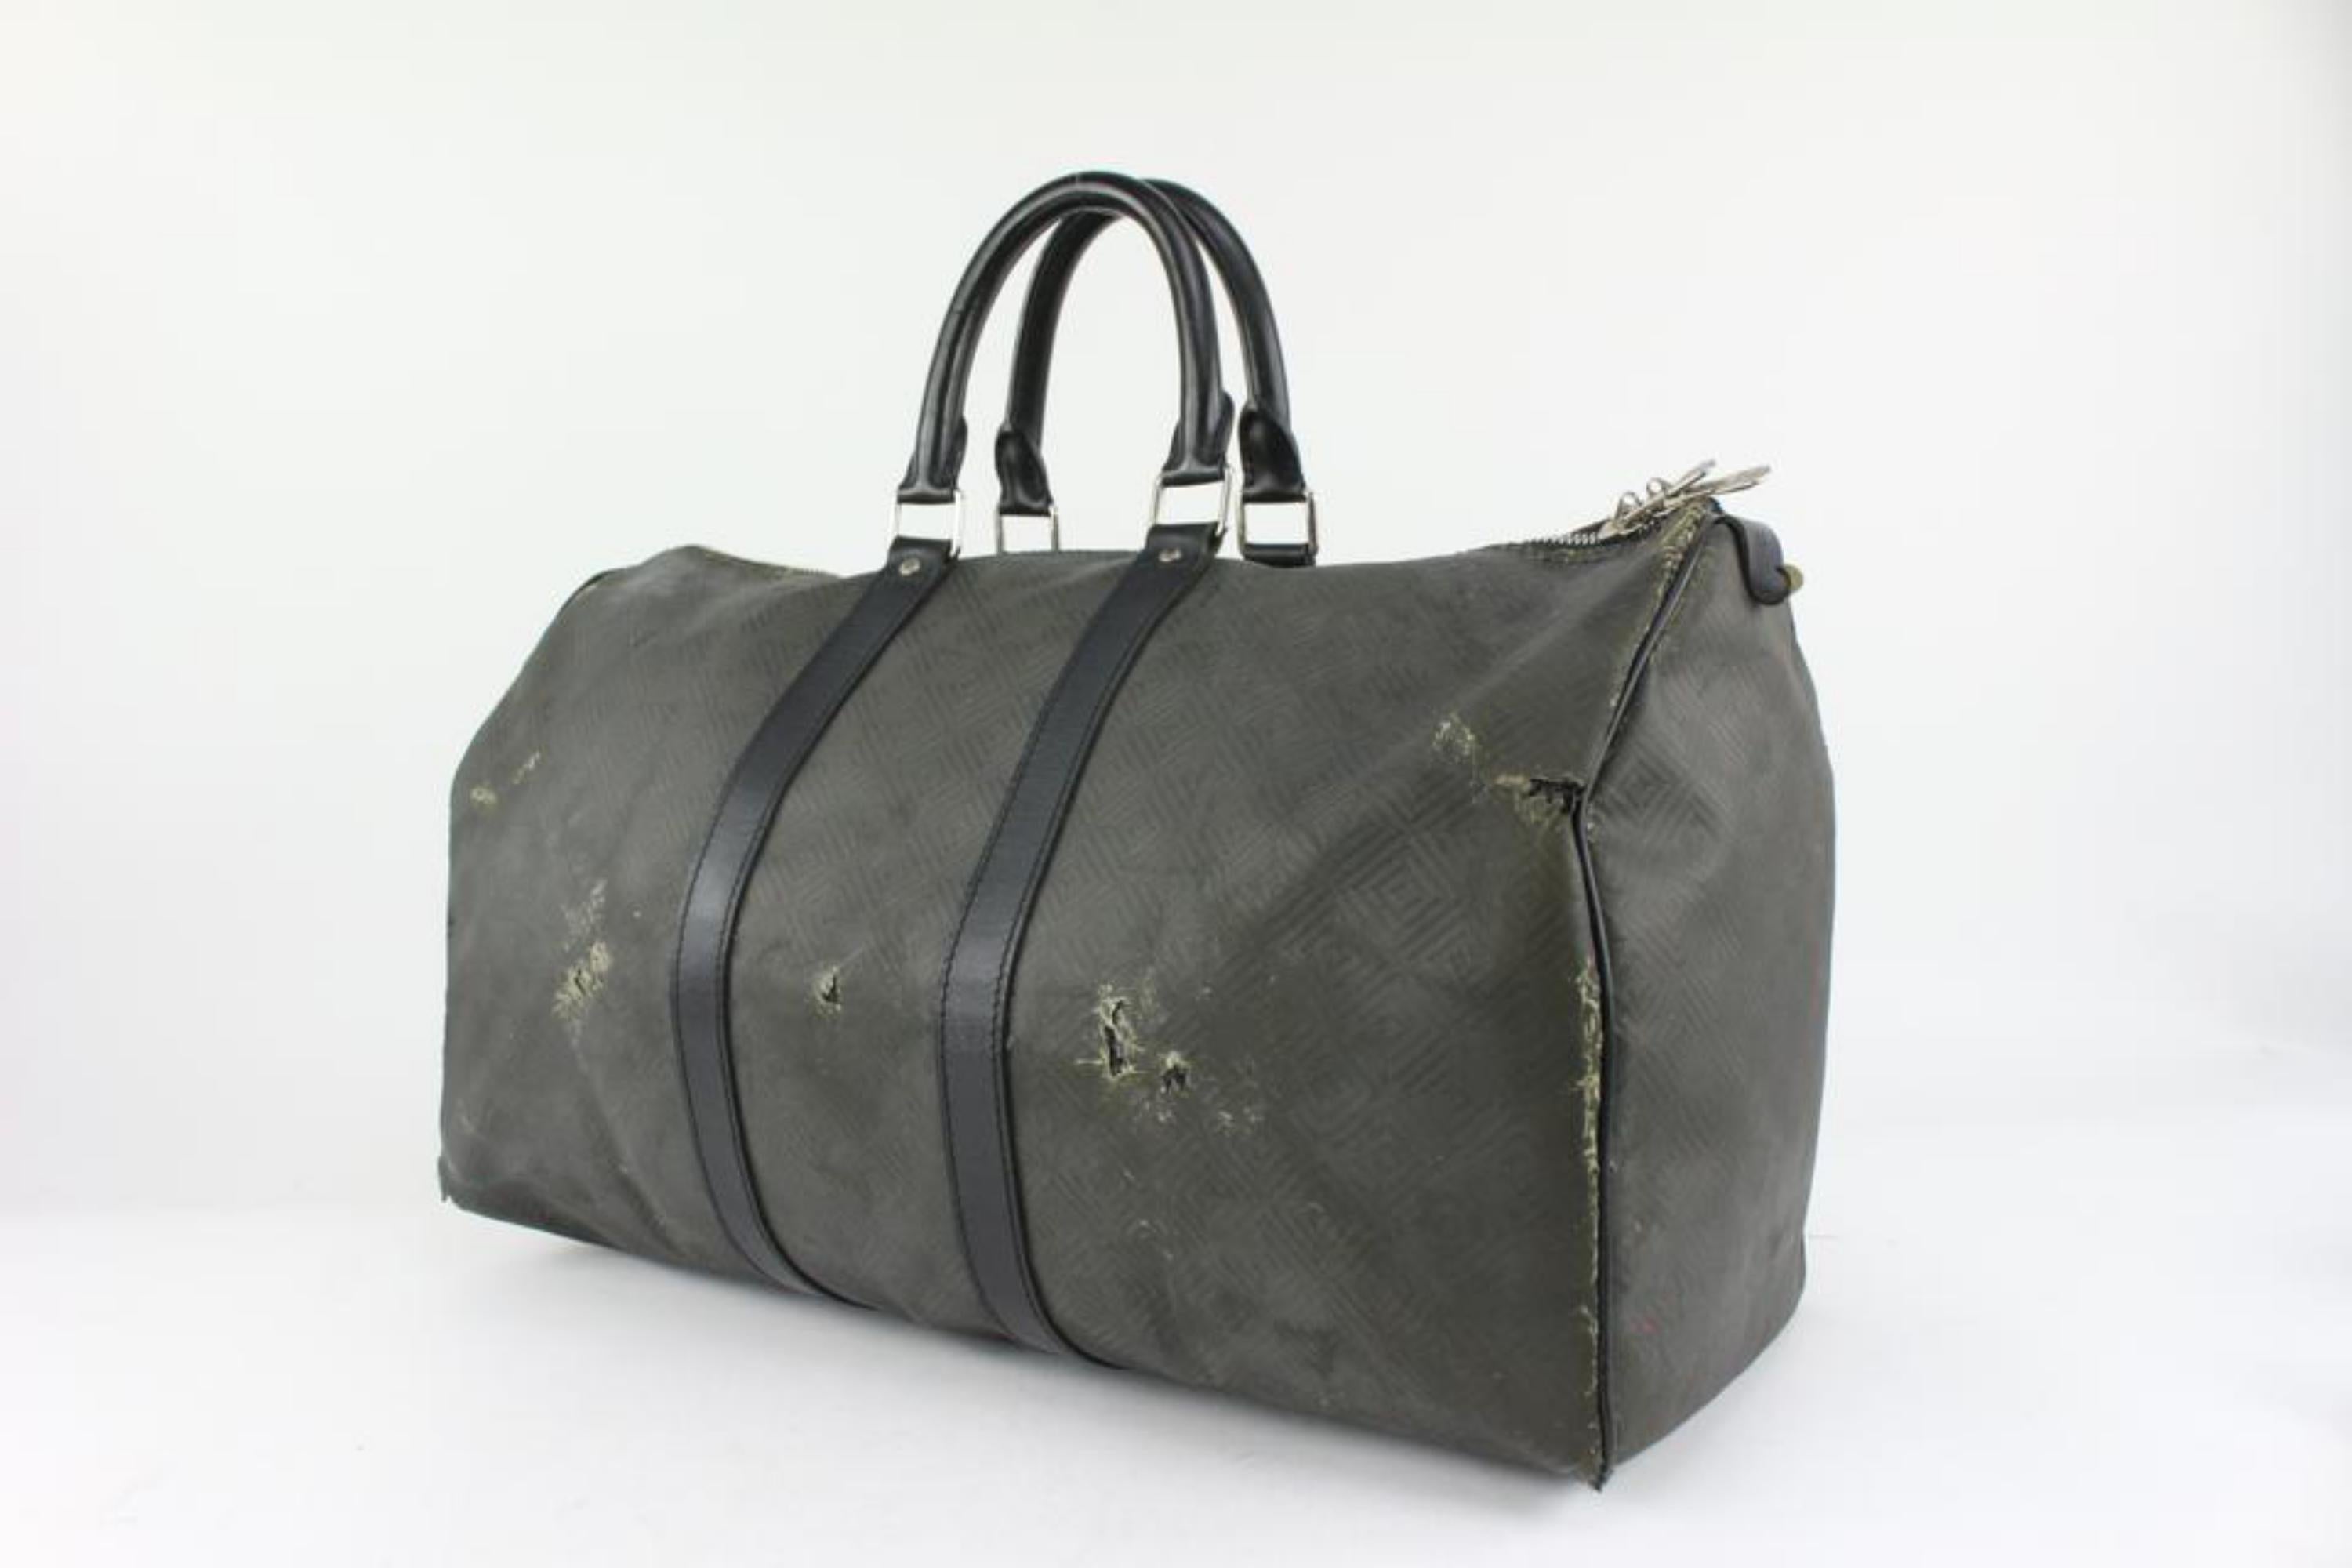 Louis Vuitton Black Carbon Fiber Damier Carbone Keepall 45 Duffle Bag 1122lv14 5